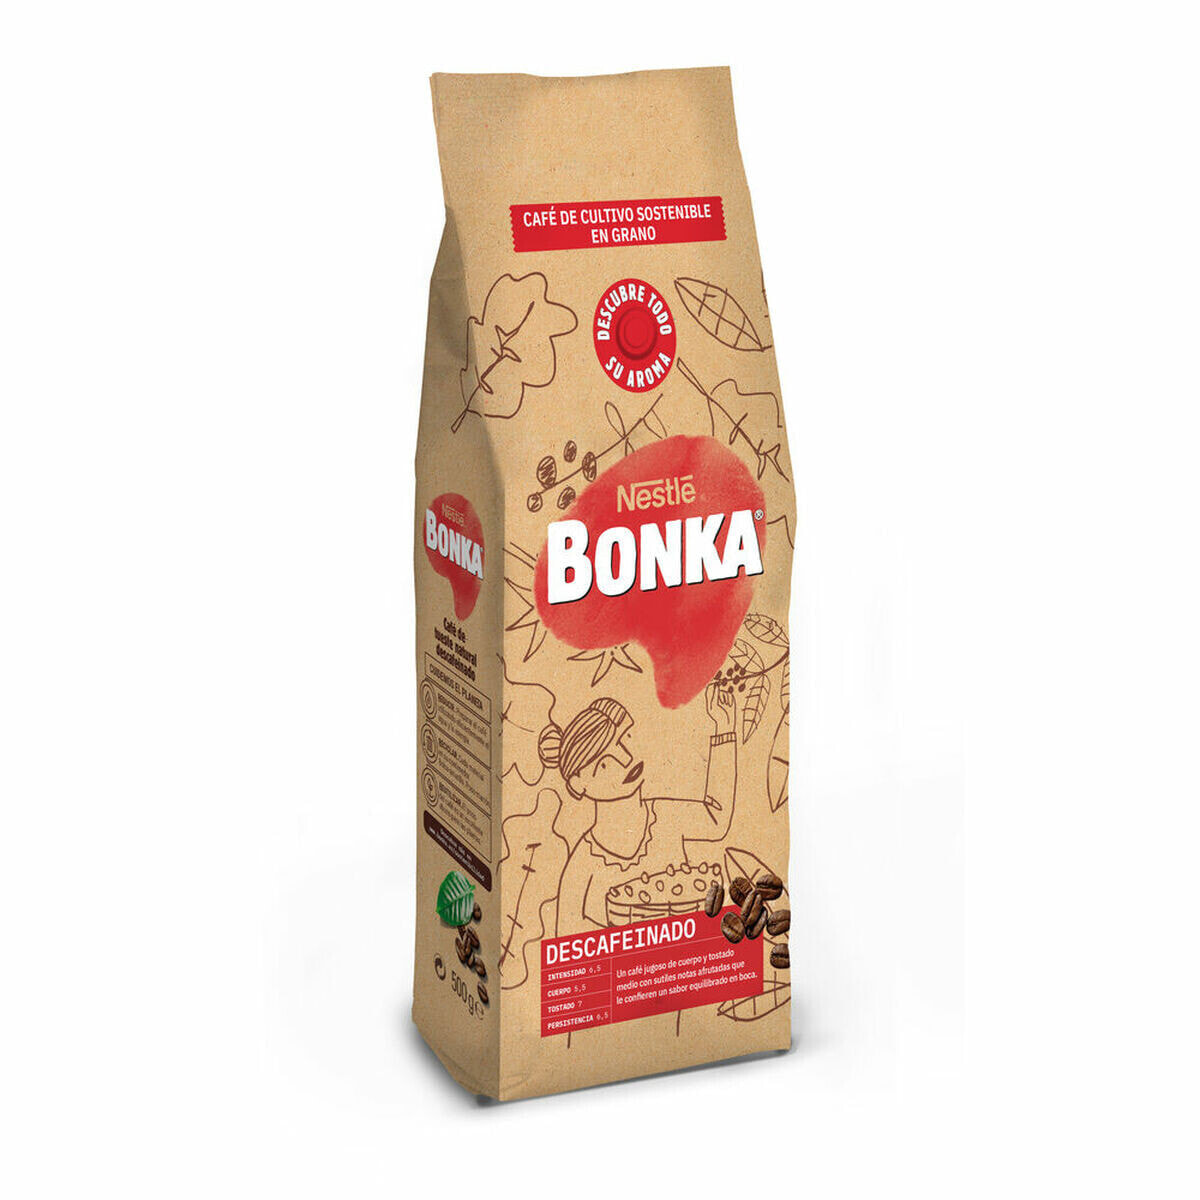 Кофе в зернах Bonka DESCAFEINADO 500g